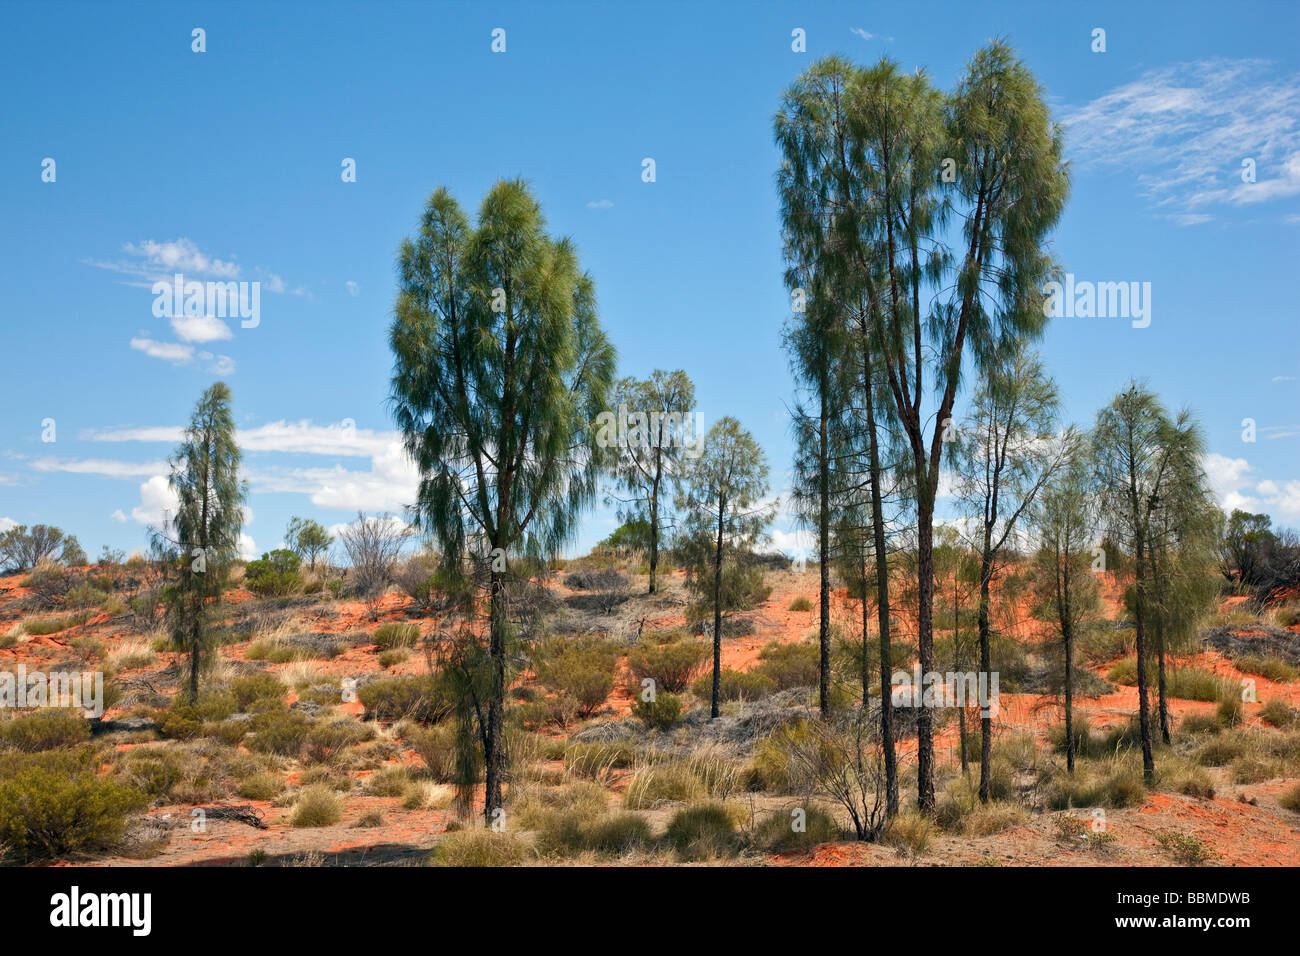 L'Australie, Territoire du Nord. Un peuplement de chênes du Désert (un membre de la famille Casuarina) en pays semi-aride près de Ayres Rock. Banque D'Images